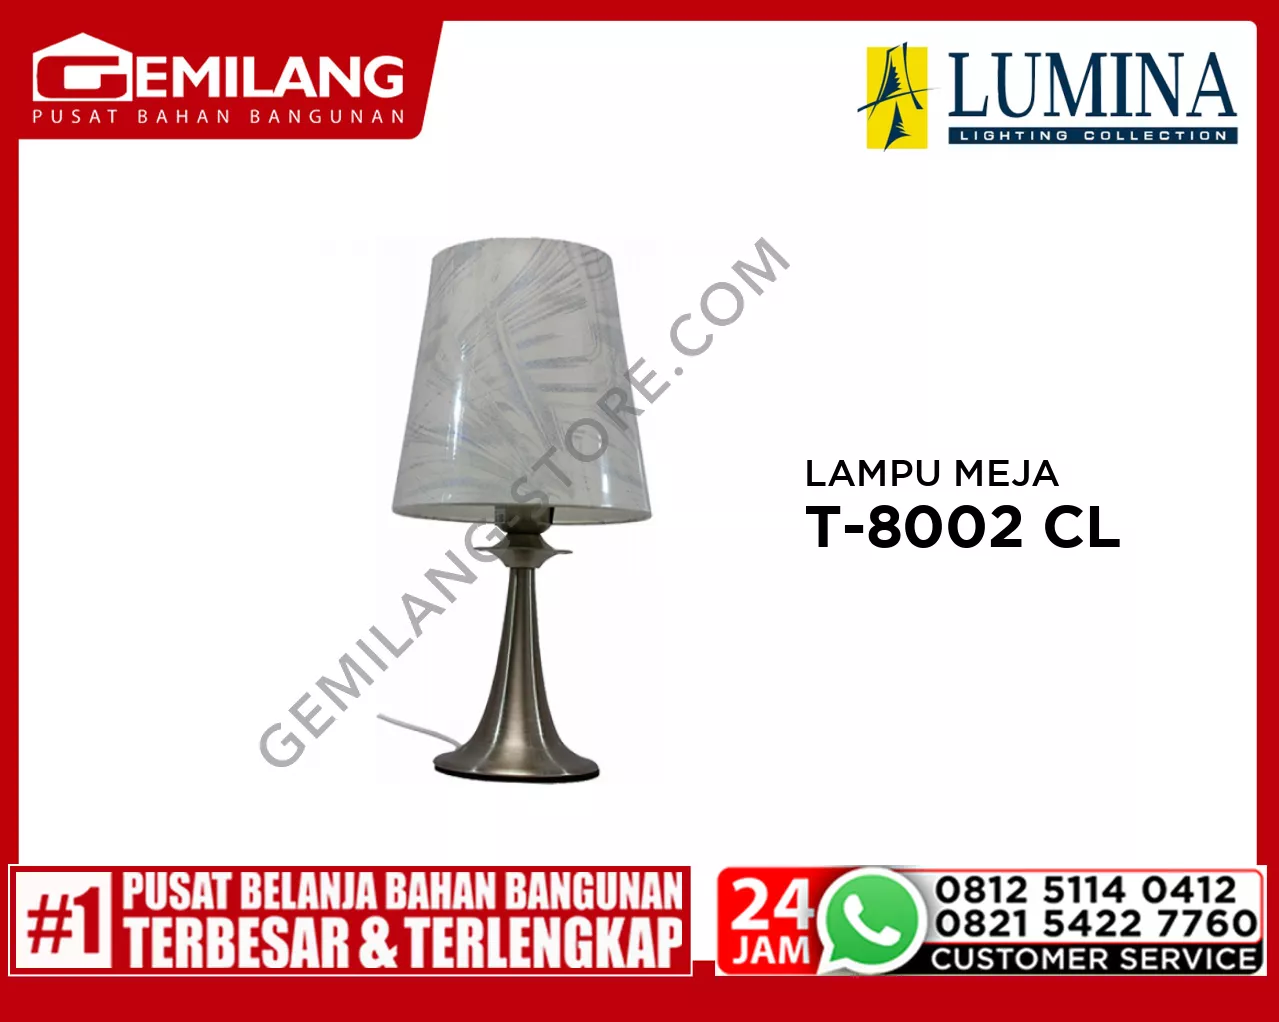 LAMPU MEJA T-8002 CL